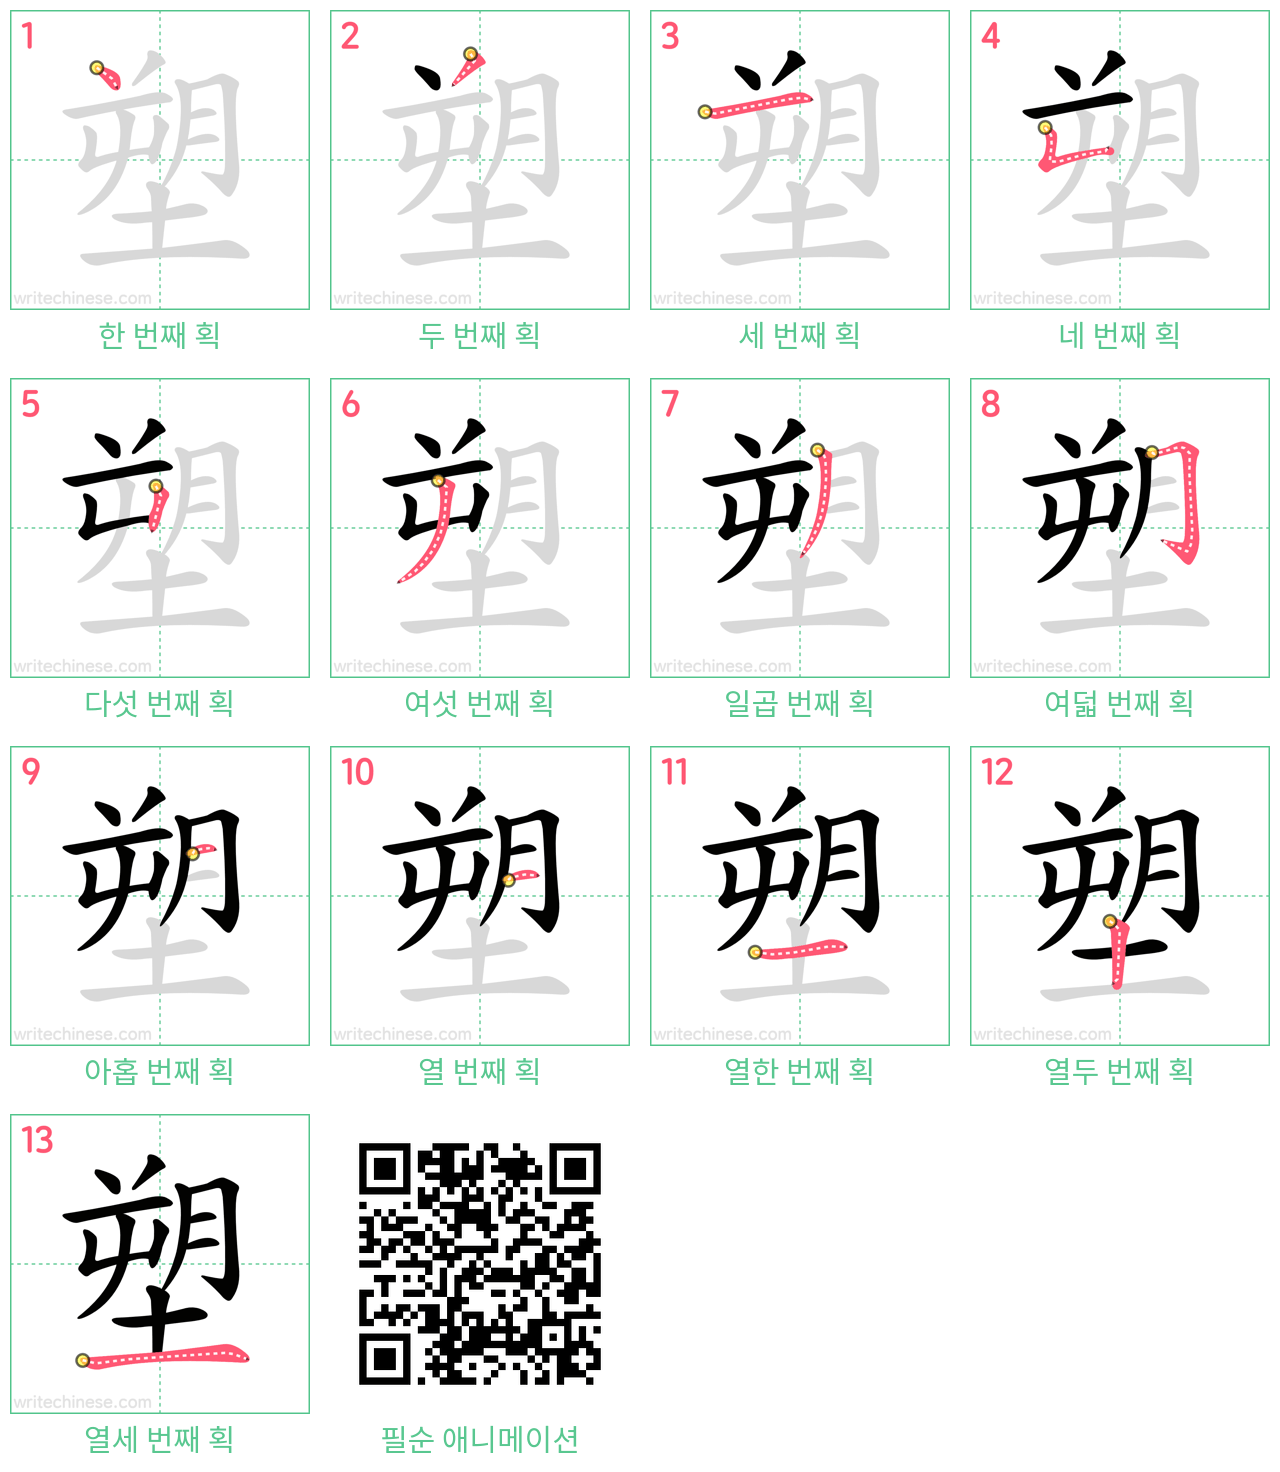 塑 step-by-step stroke order diagrams